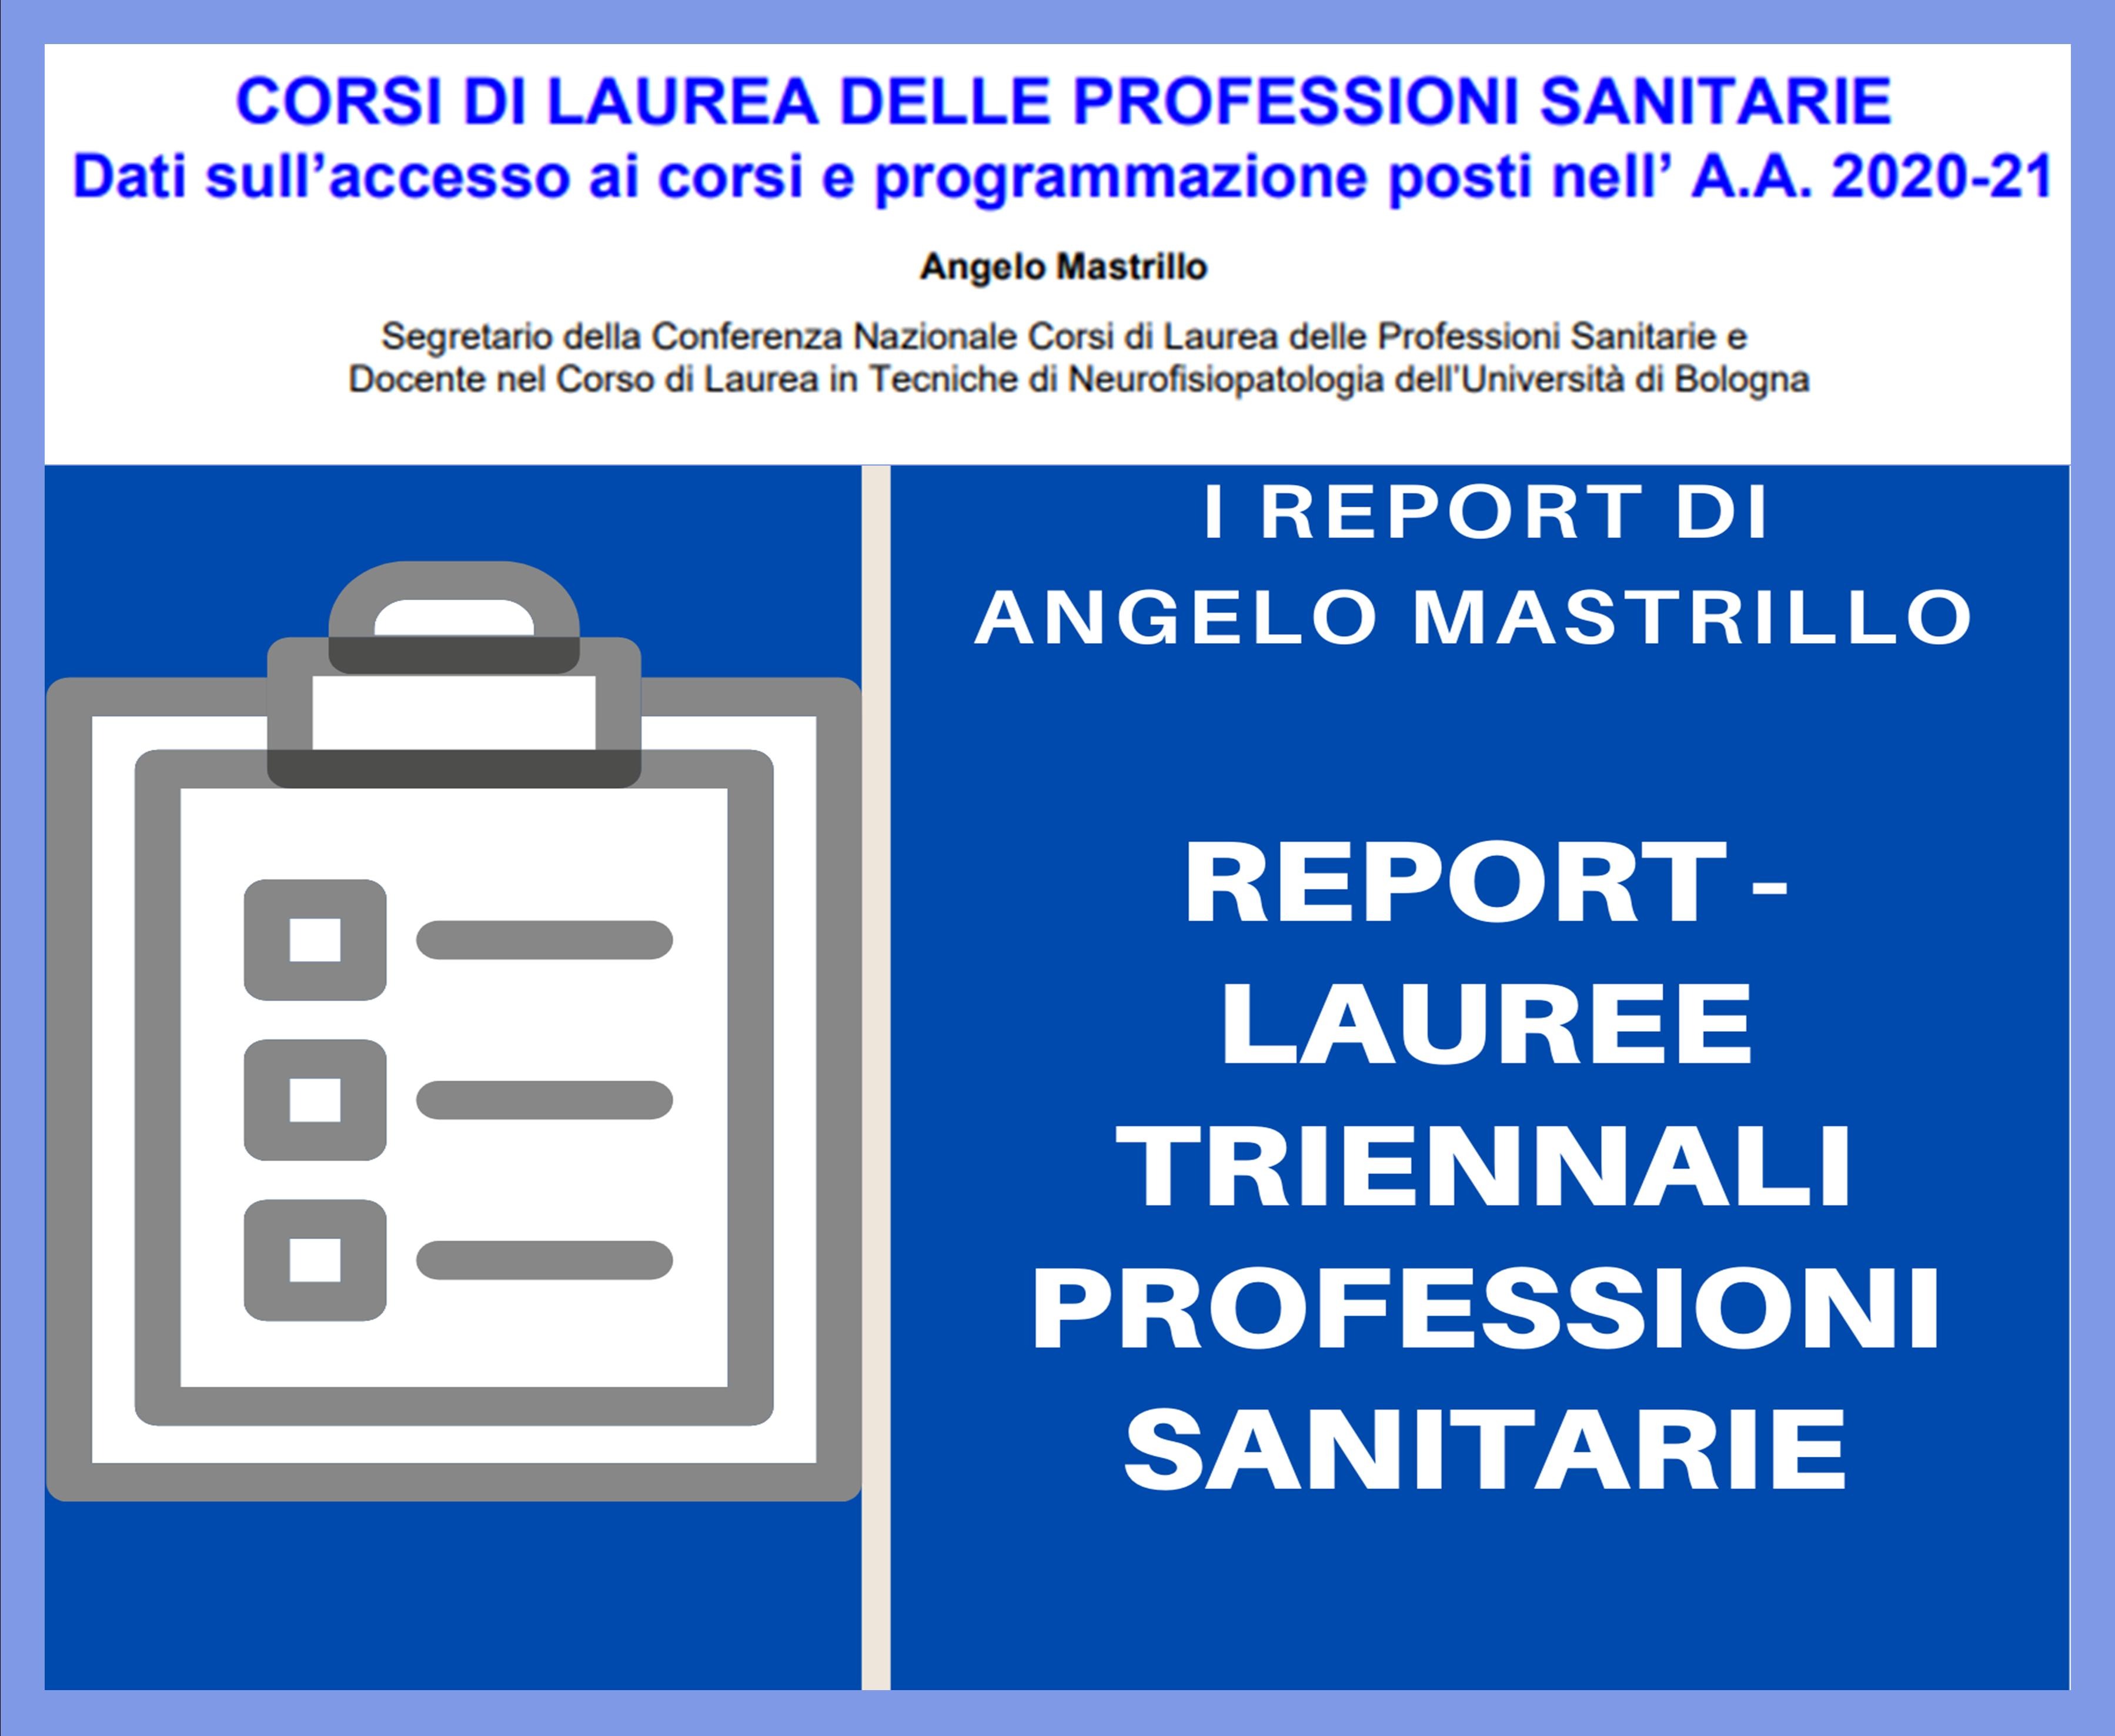 REPORT - LAUREE TRIENNALI  PROFESSIONI SANITARIE A CURA DI ANGELO MASTRILLO